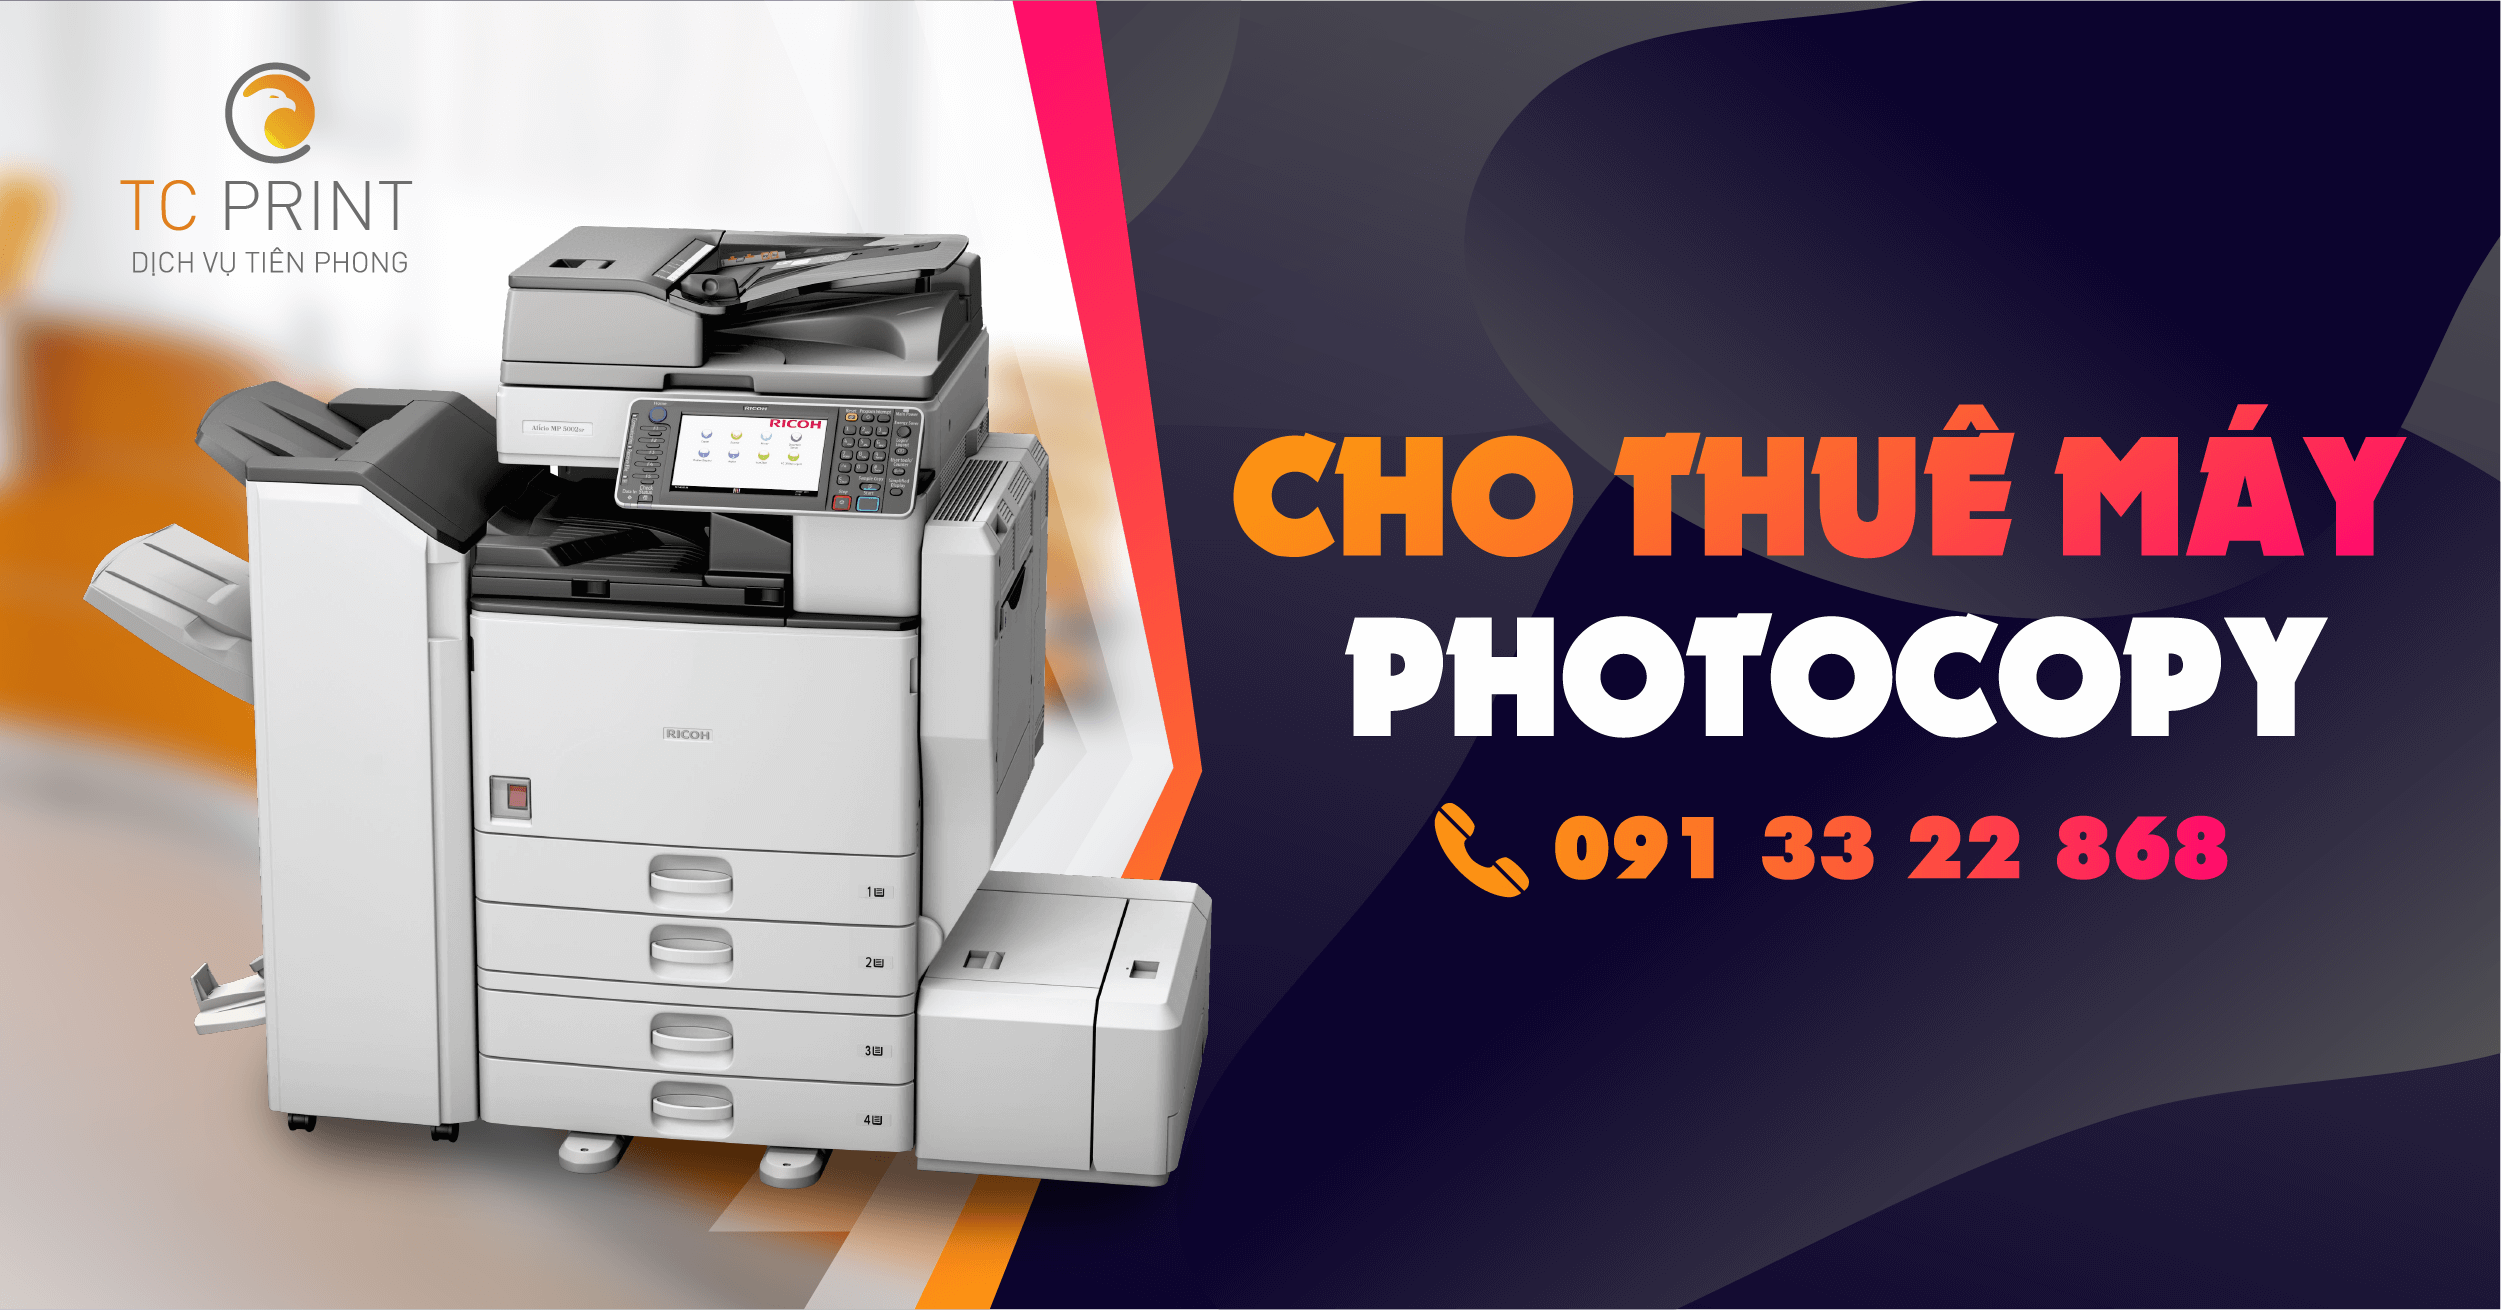 Cho thuê máy photocopy KCN Ngũ Phúc - Hải Phòng